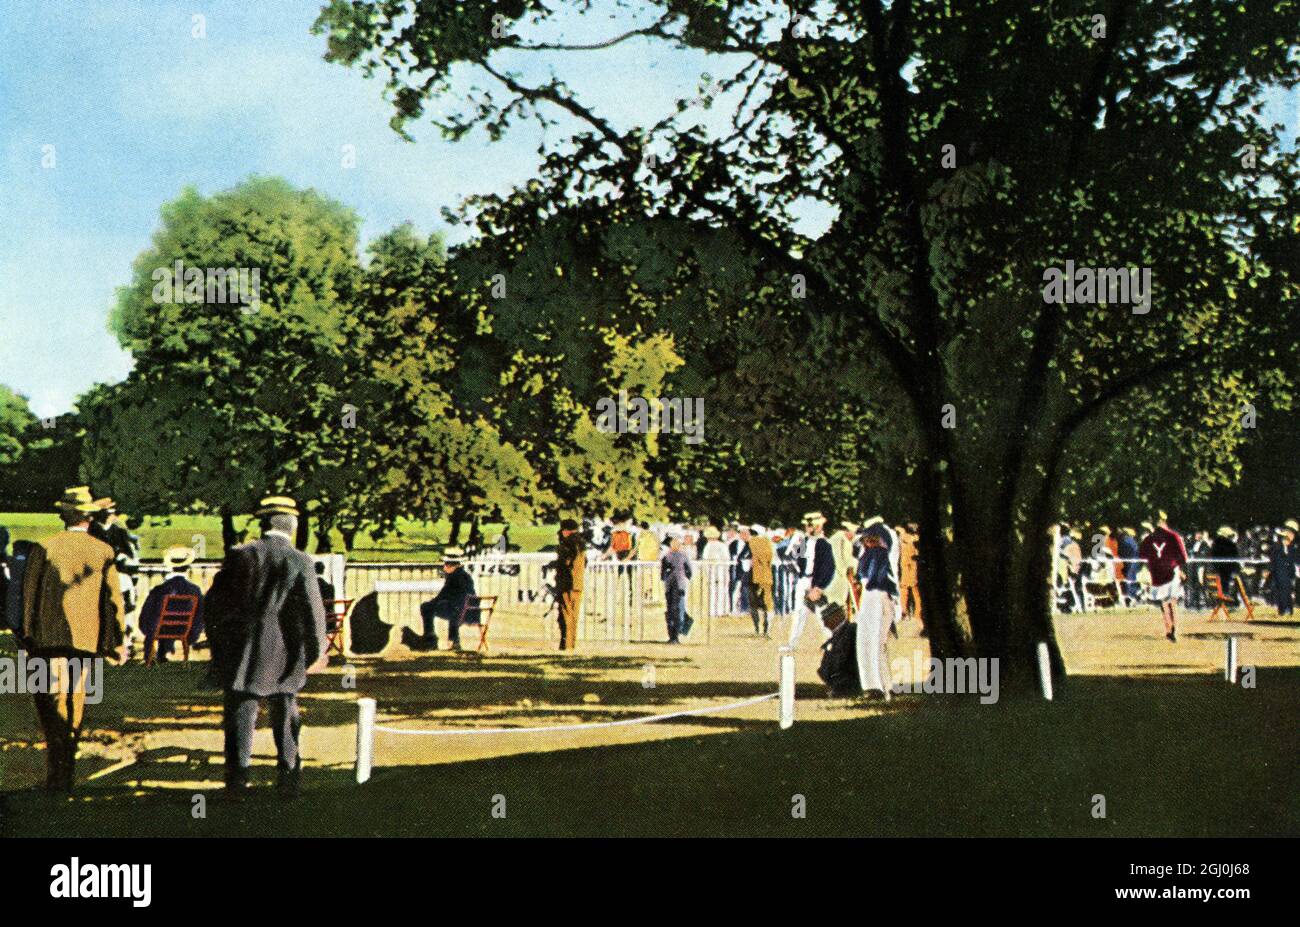 Paris 1900 - Kampf, der auf dem Verband Sportplatz Racing Club von Frankreich in Waldchen stattfindet. 500m Kurs mit Gras bedeckt und der Baum im Vordergrund blockiert die Aussicht. Zuschauer stehen im Weg. ©TopFoto Stockfoto